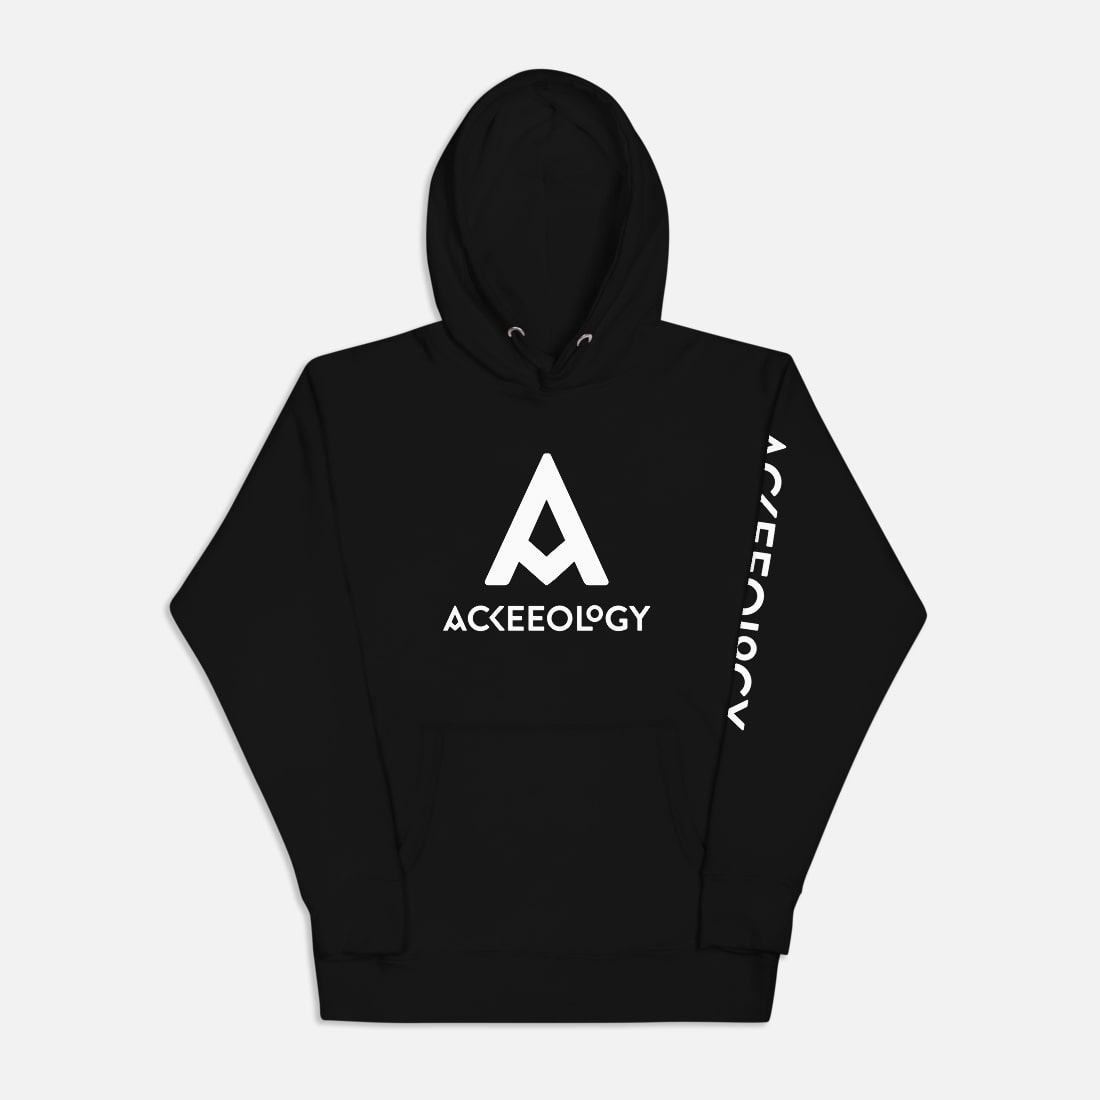 Ackeeology branded hoodie, in black, unisex